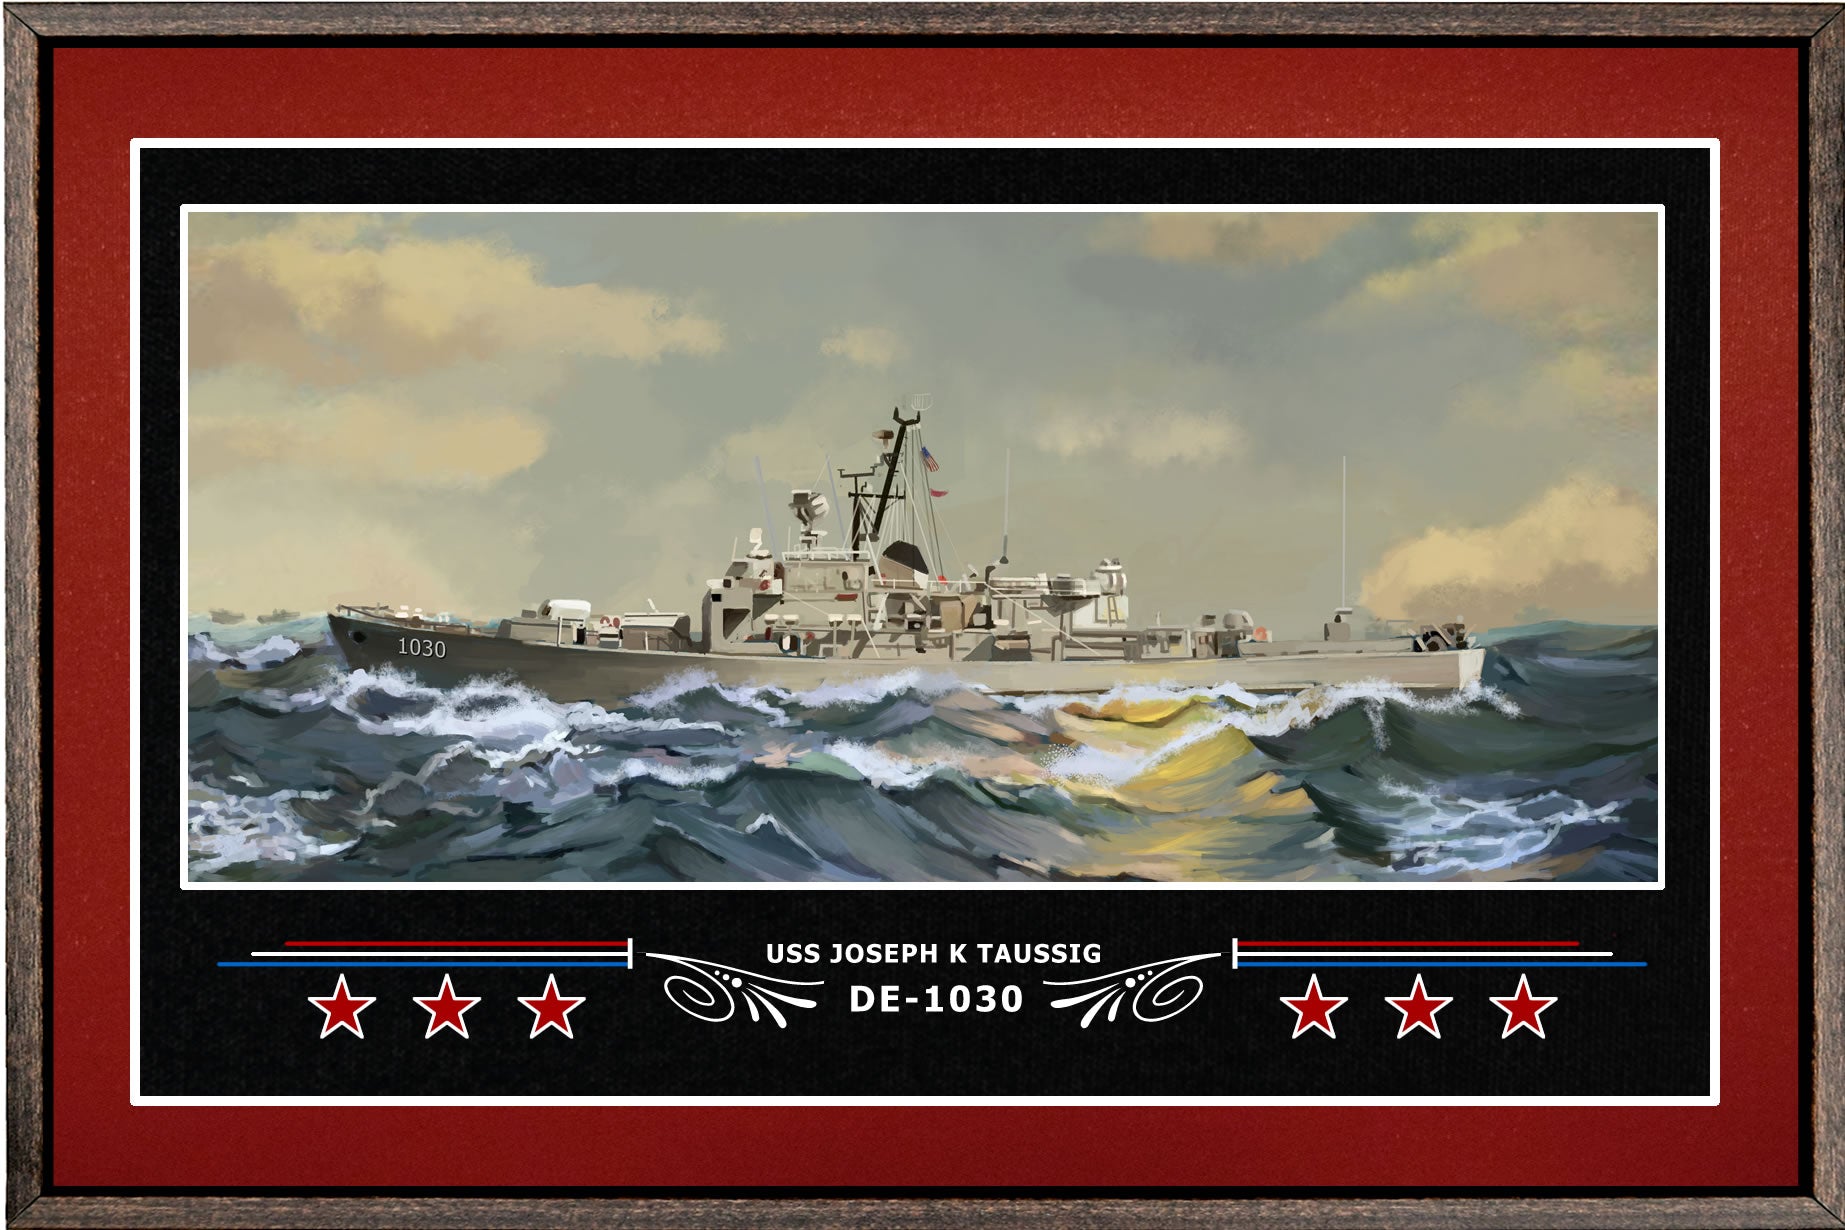 USS JOSEPH K TAUSSIG DE 1030 BOX FRAMED CANVAS ART BURGUNDY